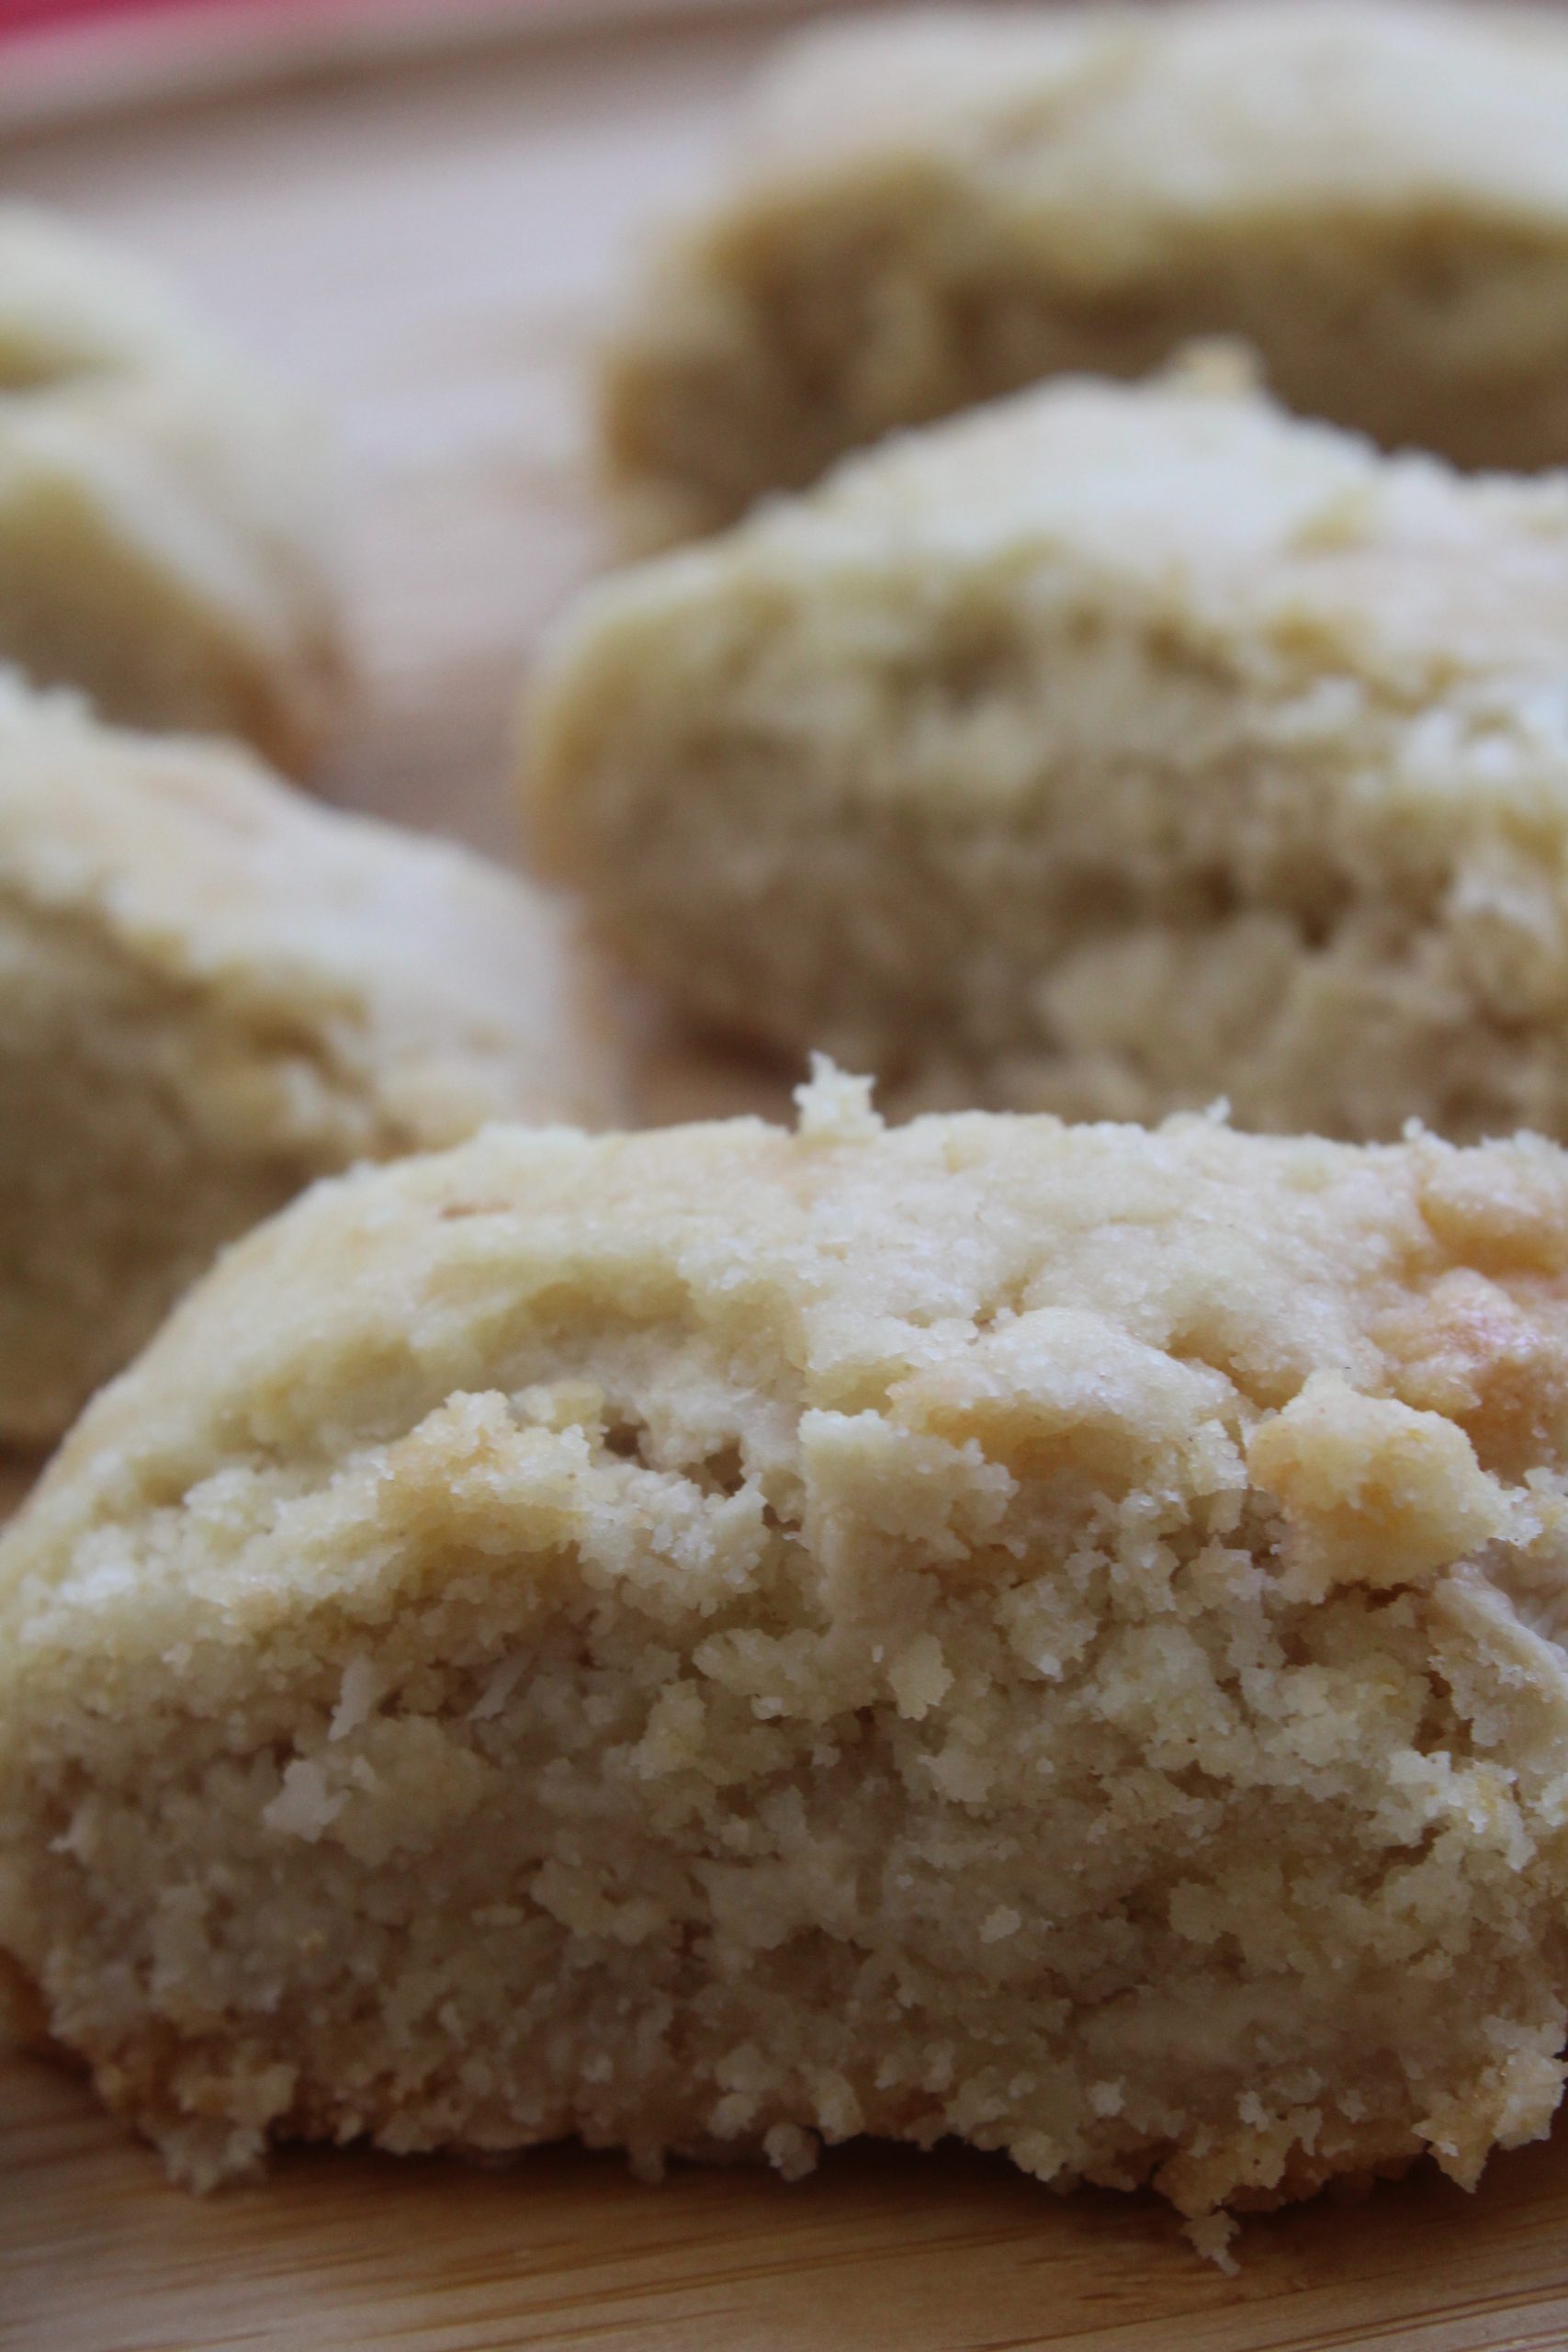 עוגיות מגולגלות חלווה עם טחינה, ממרח חלבה וקוקוס: אופציה לעוגיות פרווה וטבעוניות!